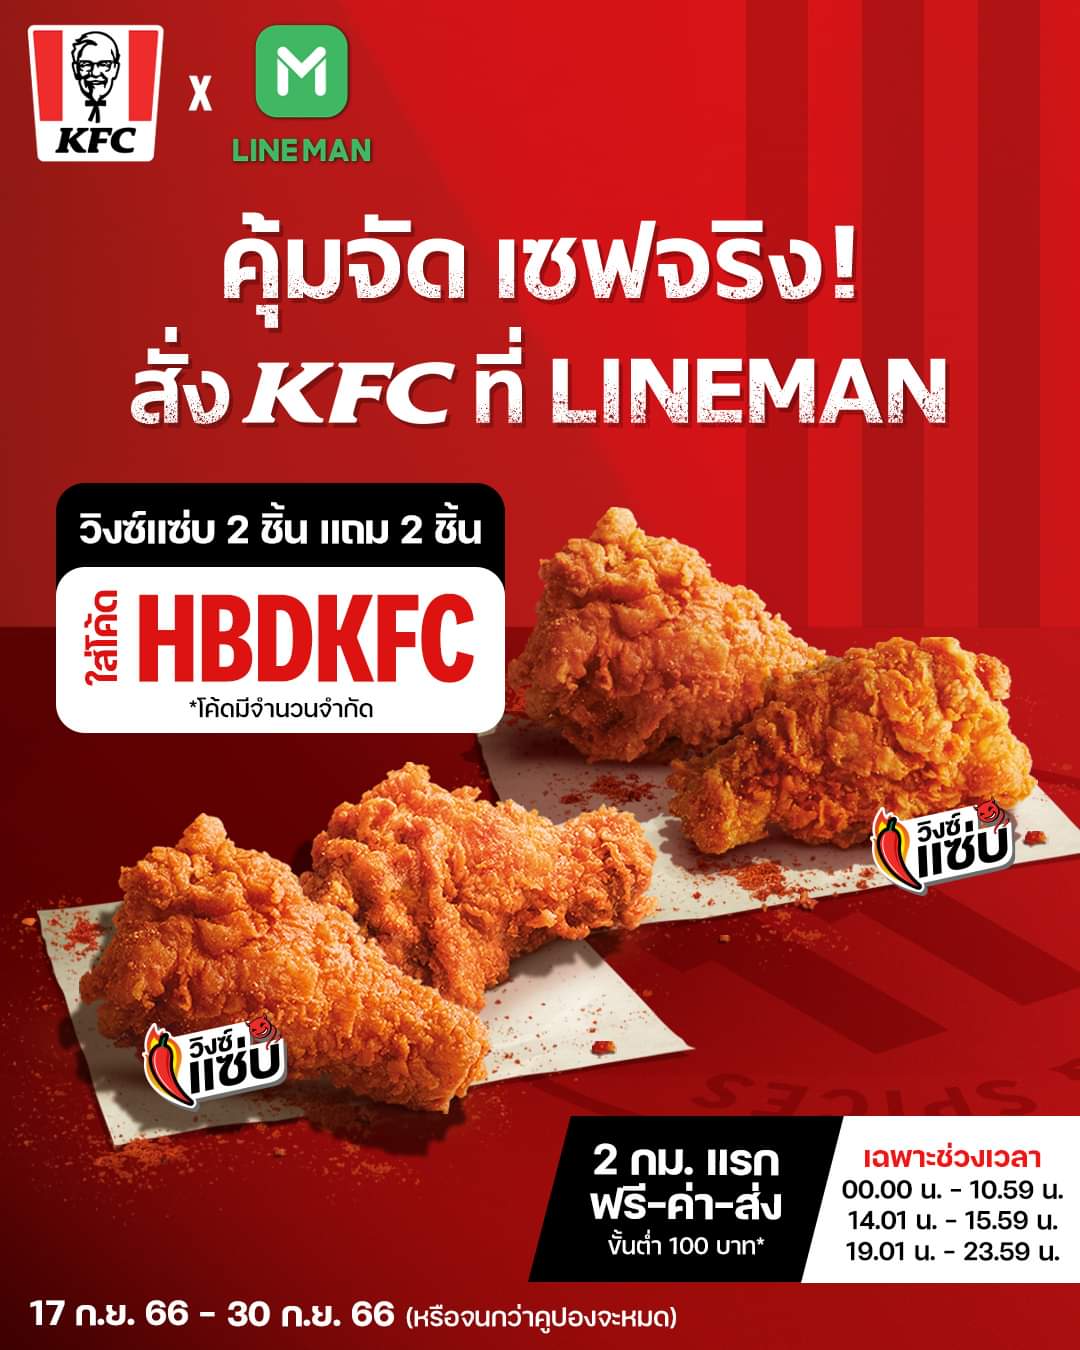 โปรโมชั่น เคเอฟซี : สั่ง KFC ที่ Lineman แค่ใส่โค้ด ‘HBDKFC’ วิงซ์แซ่บ 2 ชิ้นแถม 2 ชิ้น คุ้มกว่านี้ไม่มีแล้ว